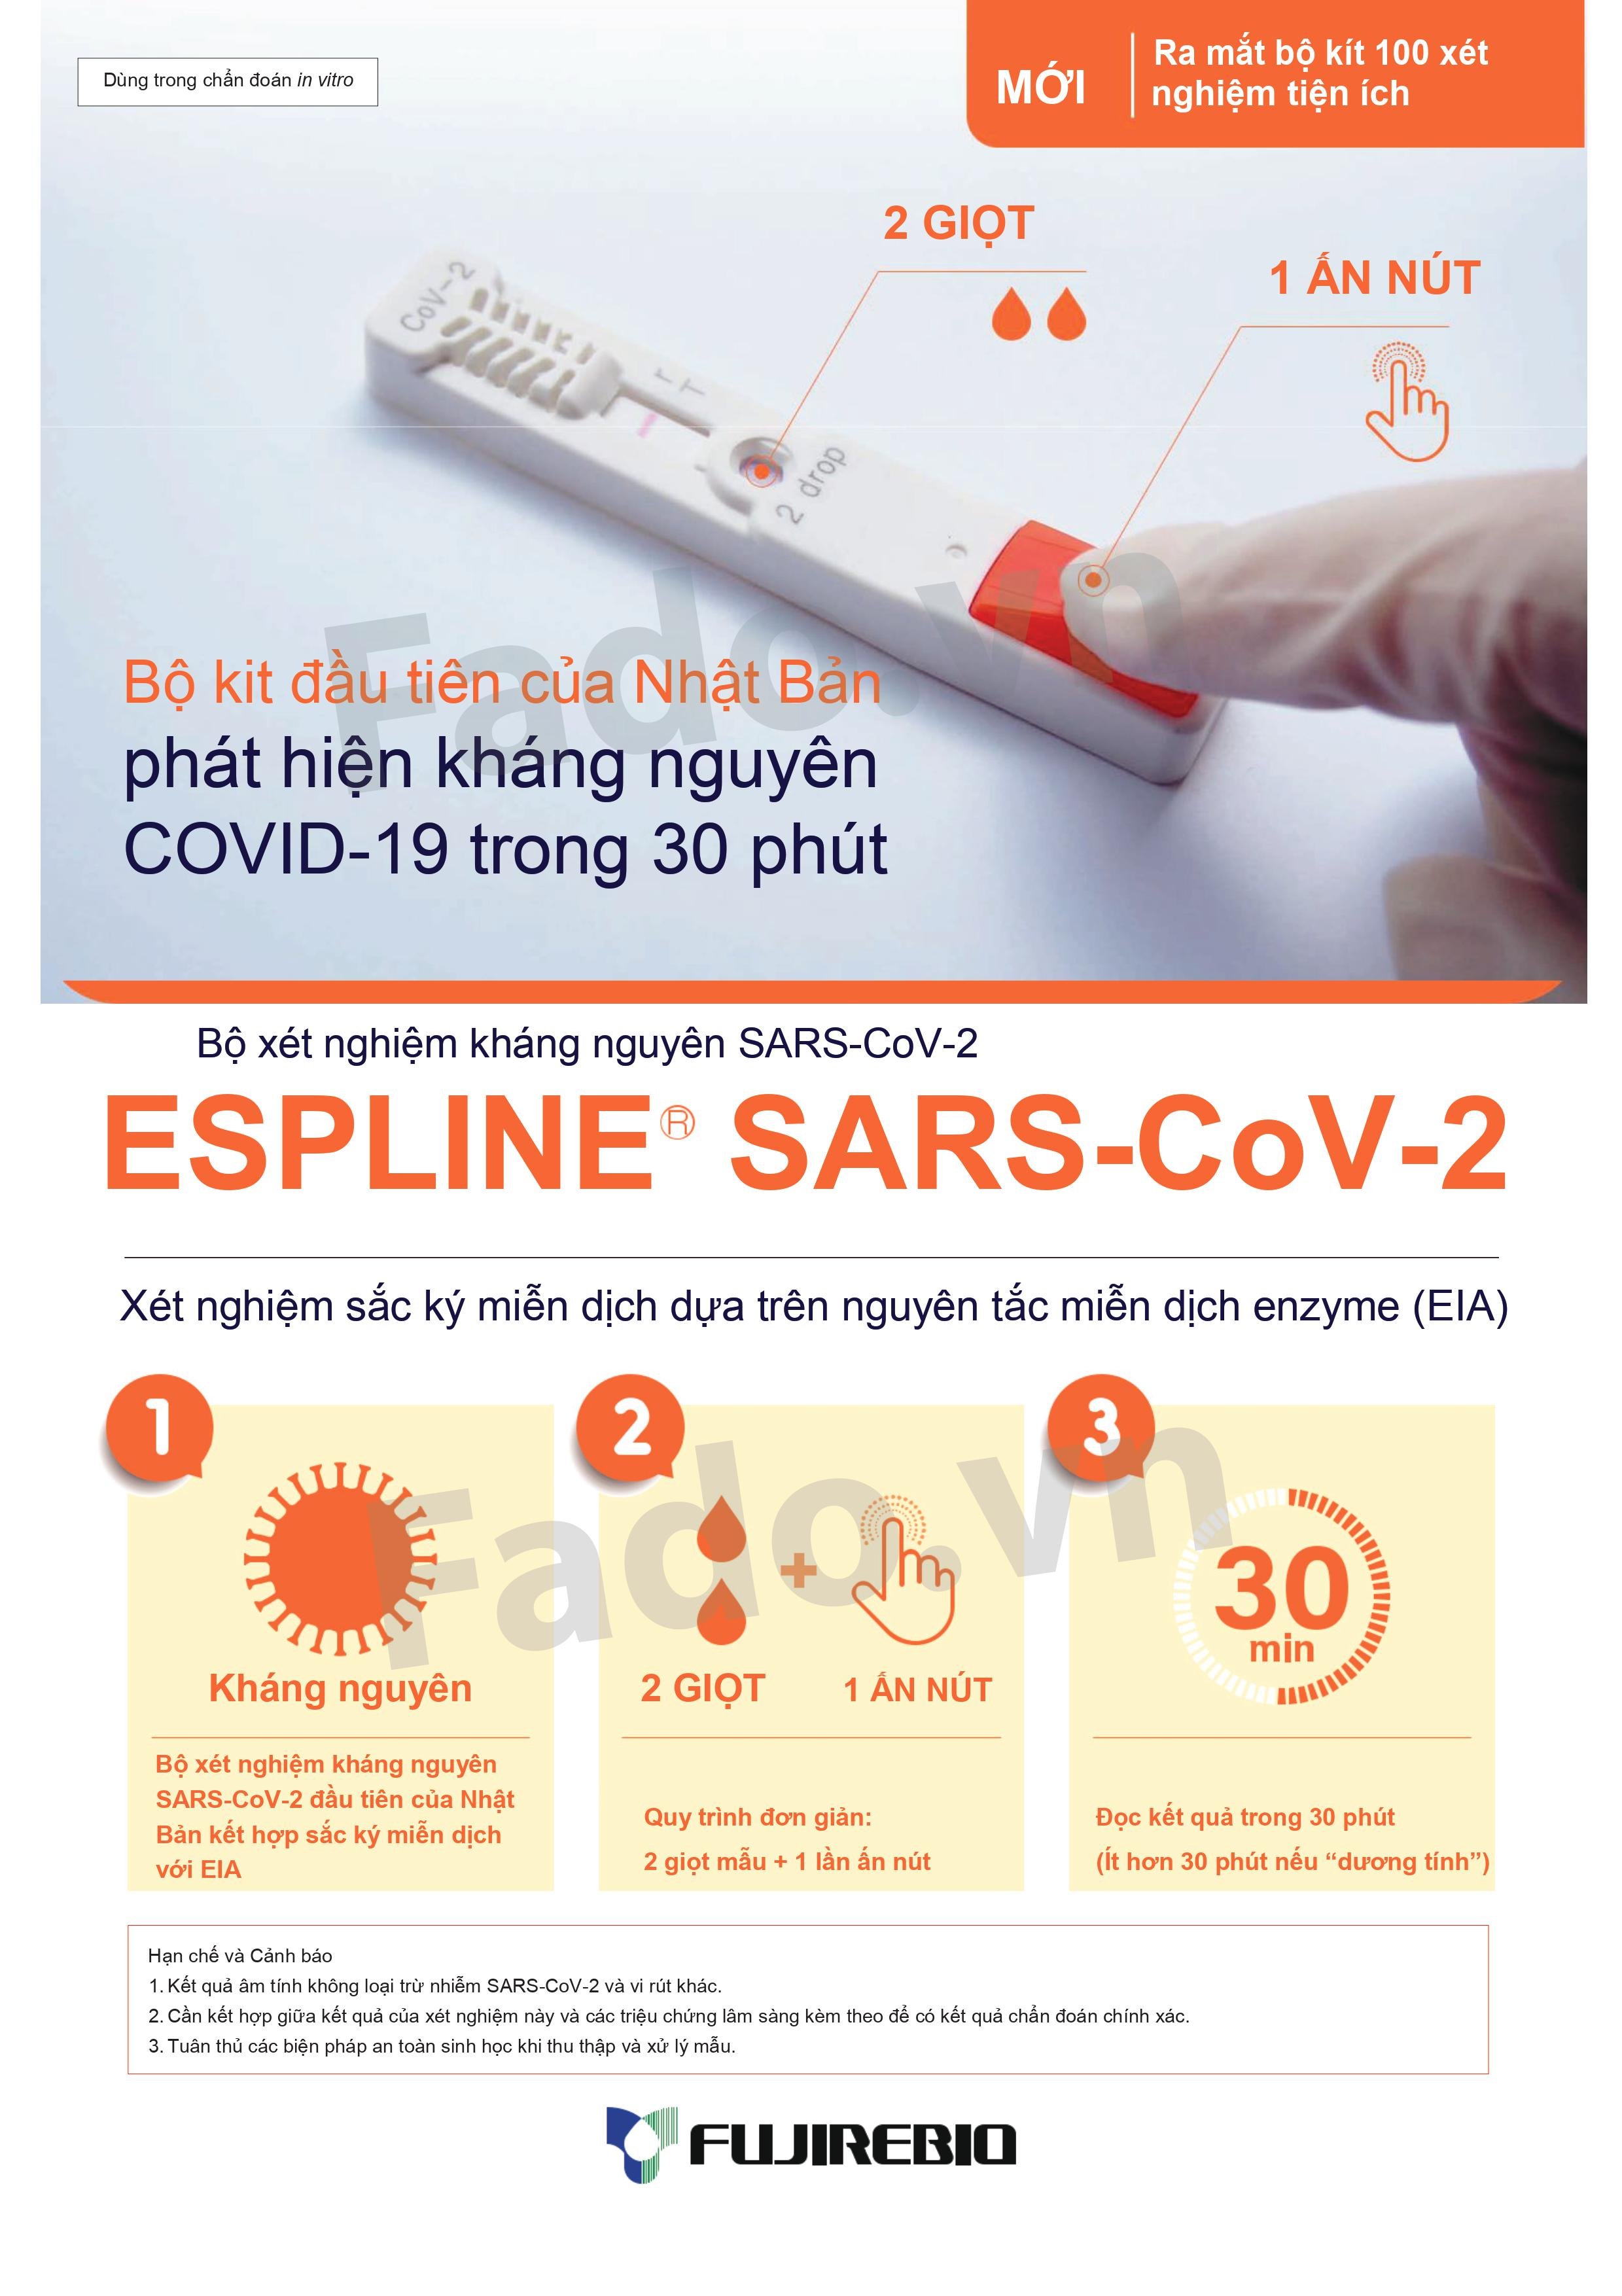 HÀNG CÓ SẴN - Combo 20 - Kit xét nghiệm kháng nguyên ESPLINE SARS-CoV-2 - Dựa trên nguyên tắc miễn dịch enzyme (EIA)